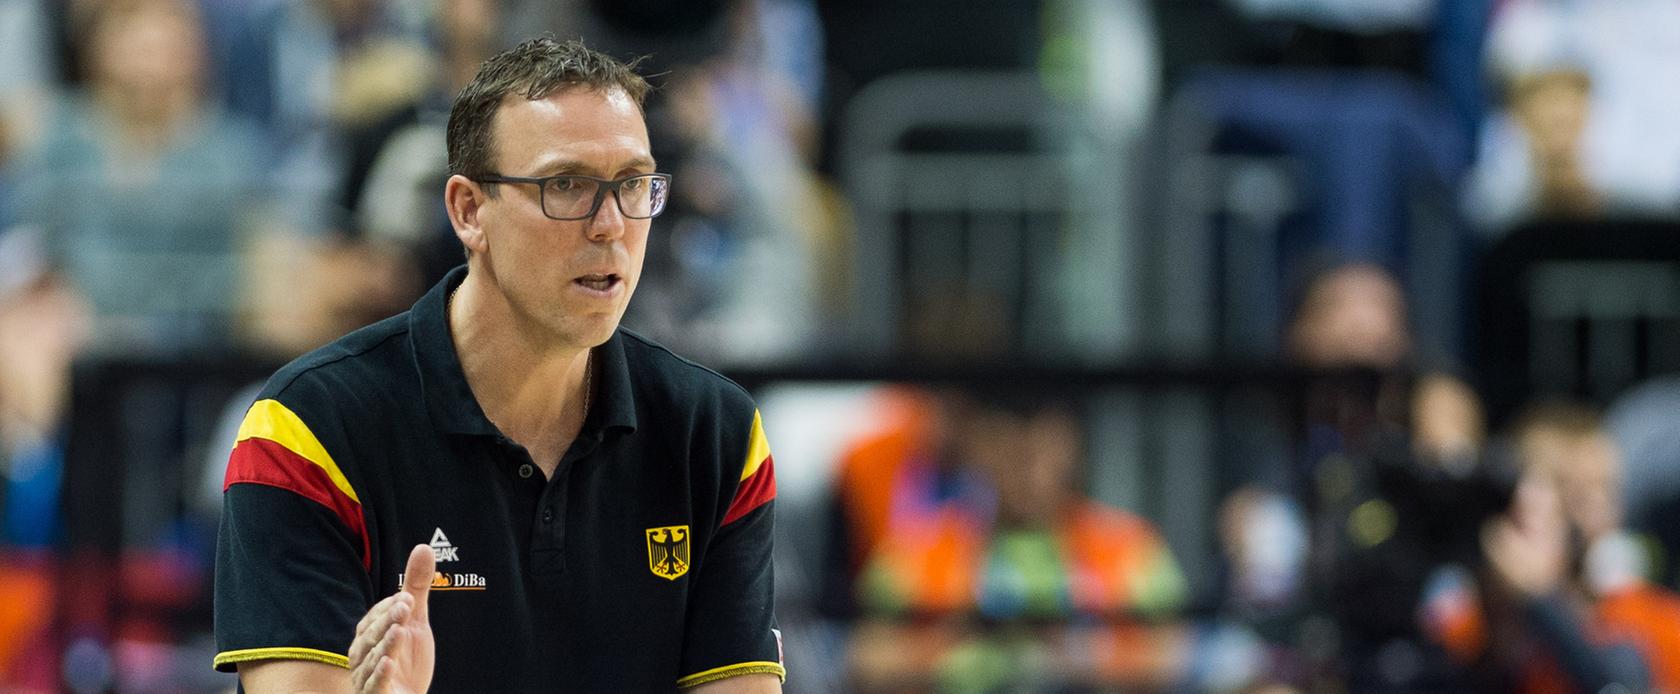 Bundestrainer Chris Fleming kan letztendlich zufrieden sein: Die deutschen basketballer sind bei der EM 2017 mit dabei.